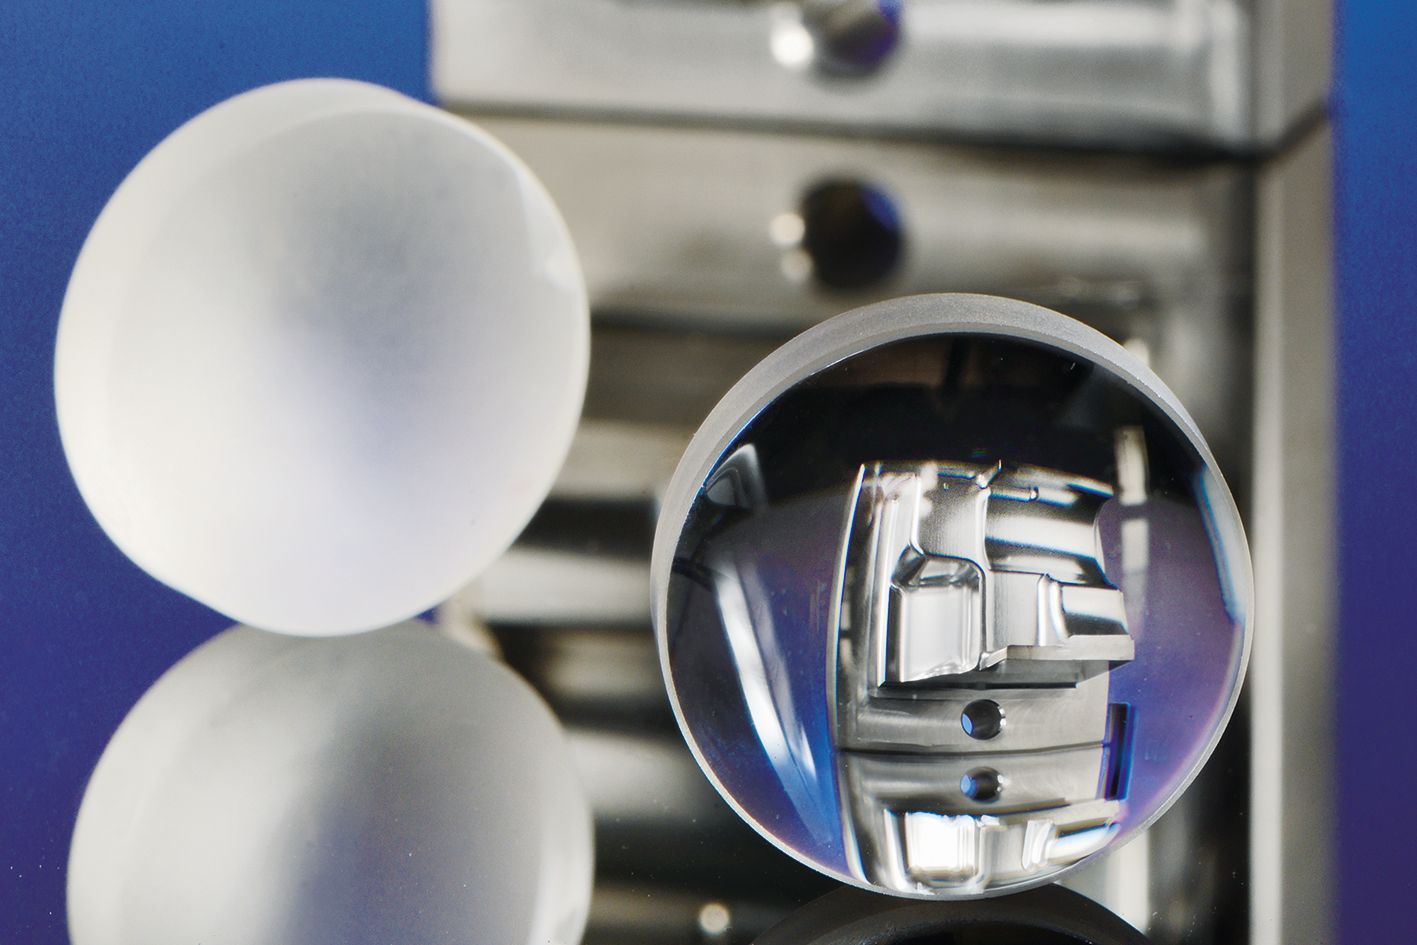 Linse aus Quarzglas geschliffen (links) und laserpoliert (rechts). Durch die laserpolierte Linse ist ein laserpoliertes Bauteil aus Werkzeugstahl zu sehen.